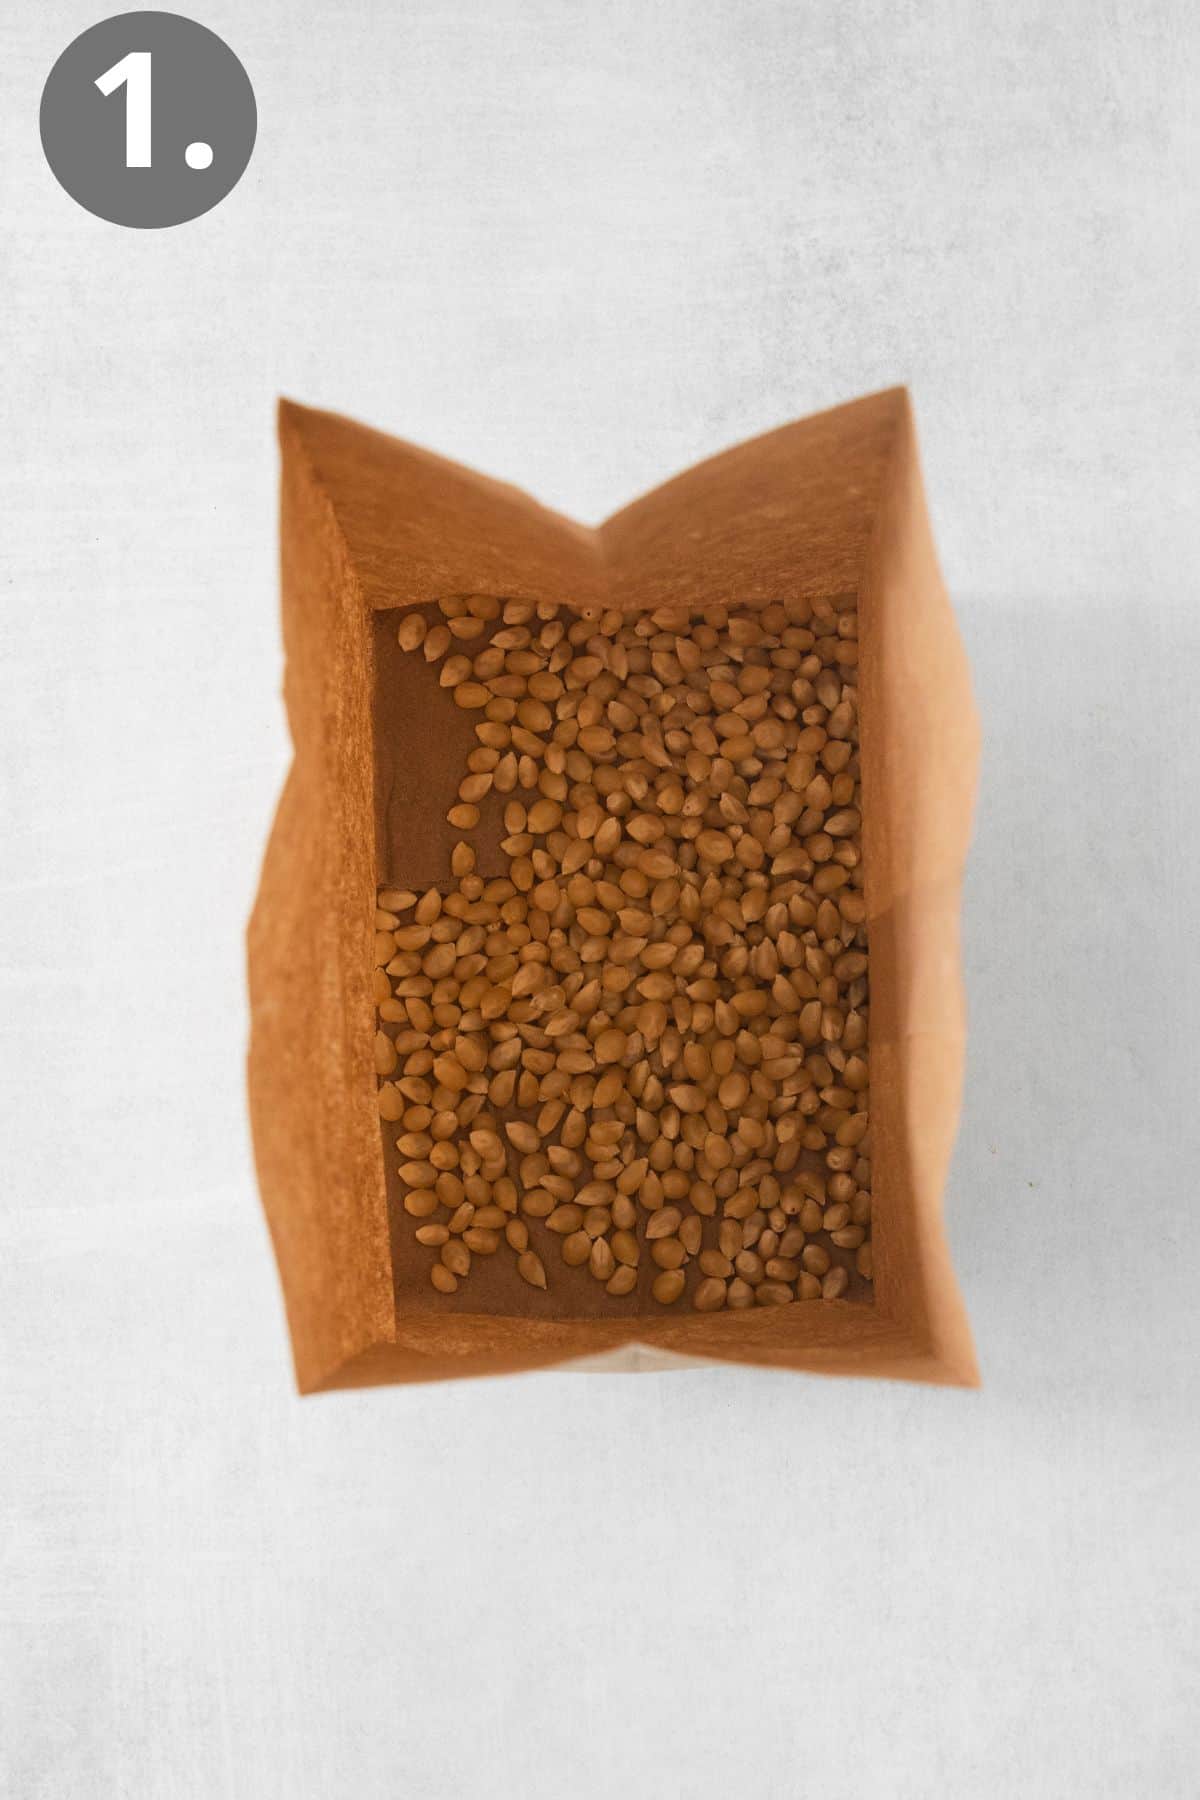 Popcorn kernels in a brown bag